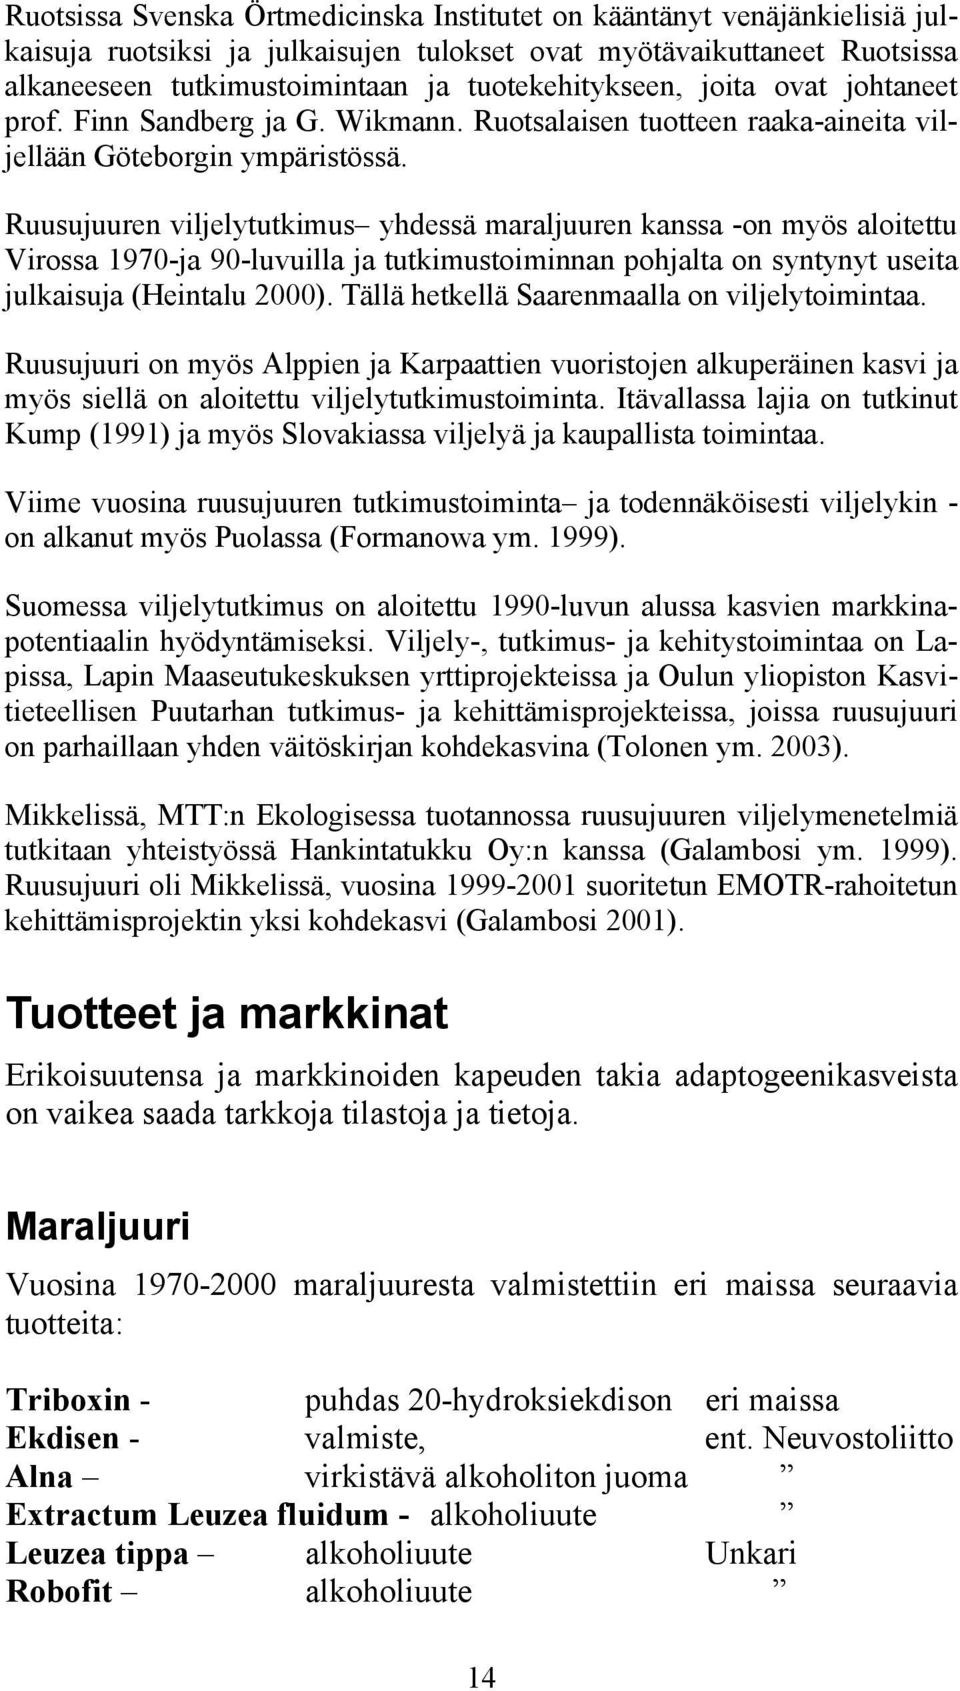 Ruusujuuren viljelytutkimus yhdessä maraljuuren kanssa -on myös aloitettu Virossa 1970-ja 90-luvuilla ja tutkimustoiminnan pohjalta on syntynyt useita julkaisuja (Heintalu 2000).